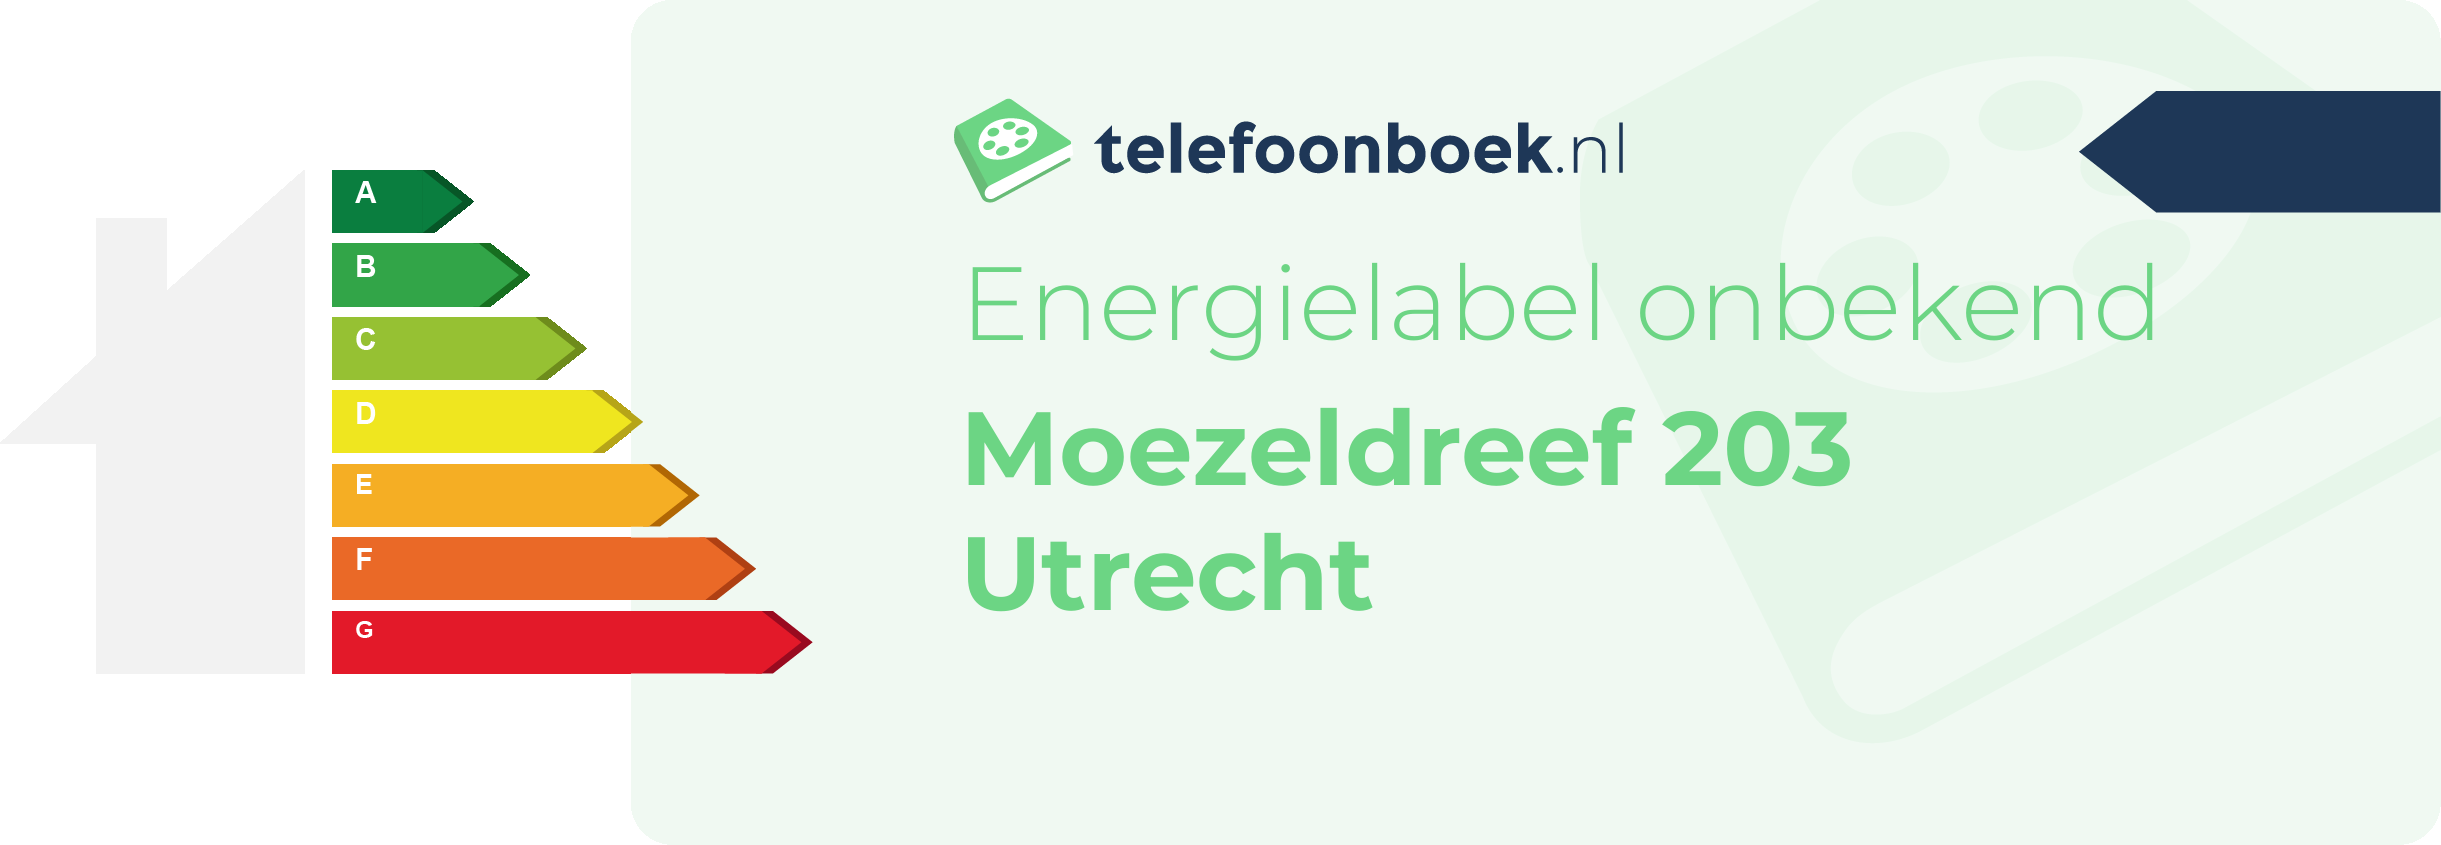 Energielabel Moezeldreef 203 Utrecht